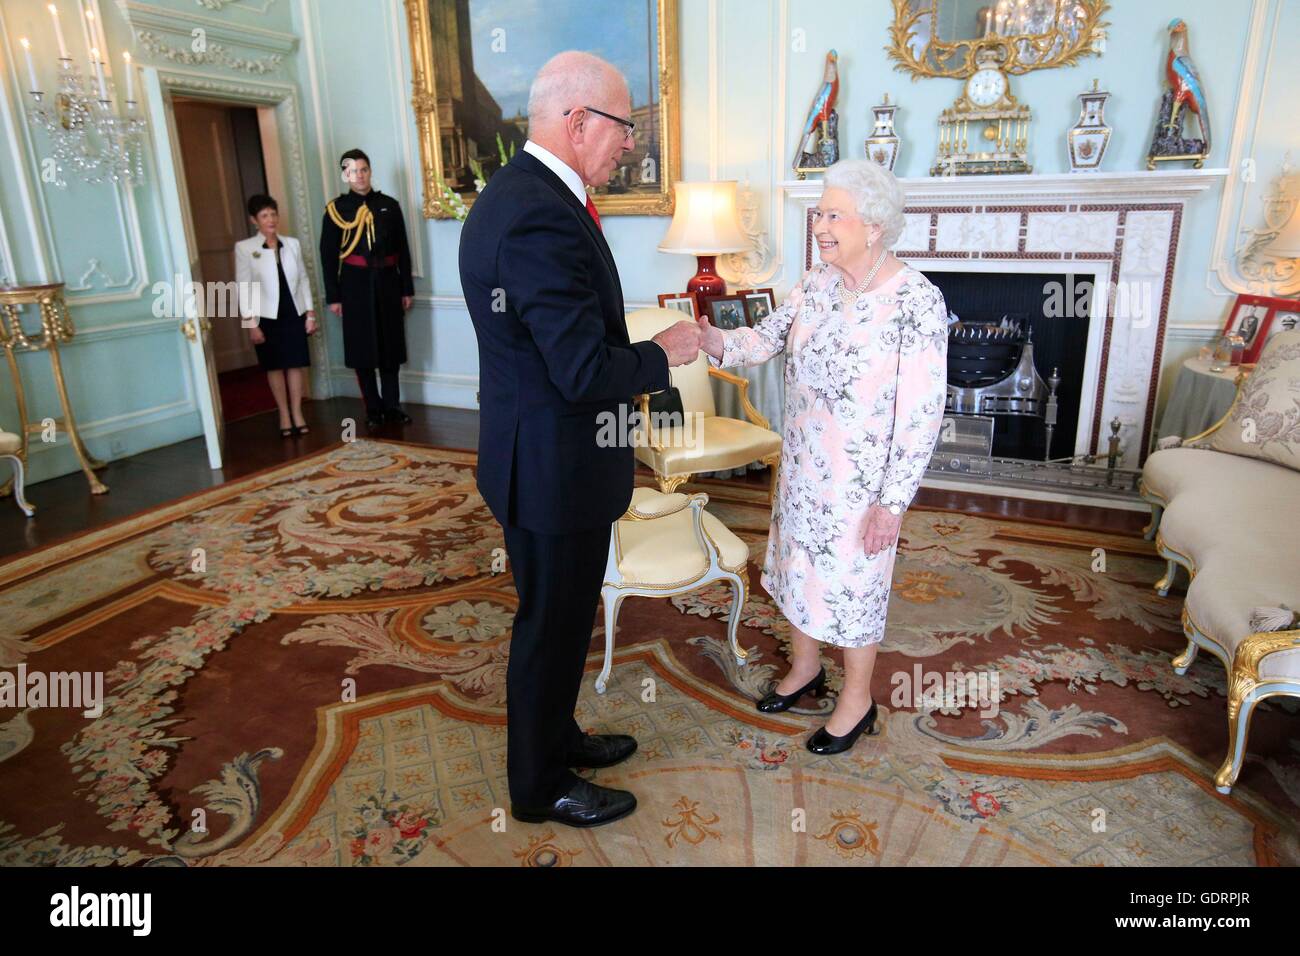 La reine Elizabeth II reçoit David Hurley, Gouverneur de Nouvelle-Galles du Sud, au début d'une audience privée au palais de Buckingham, à Londres. Banque D'Images